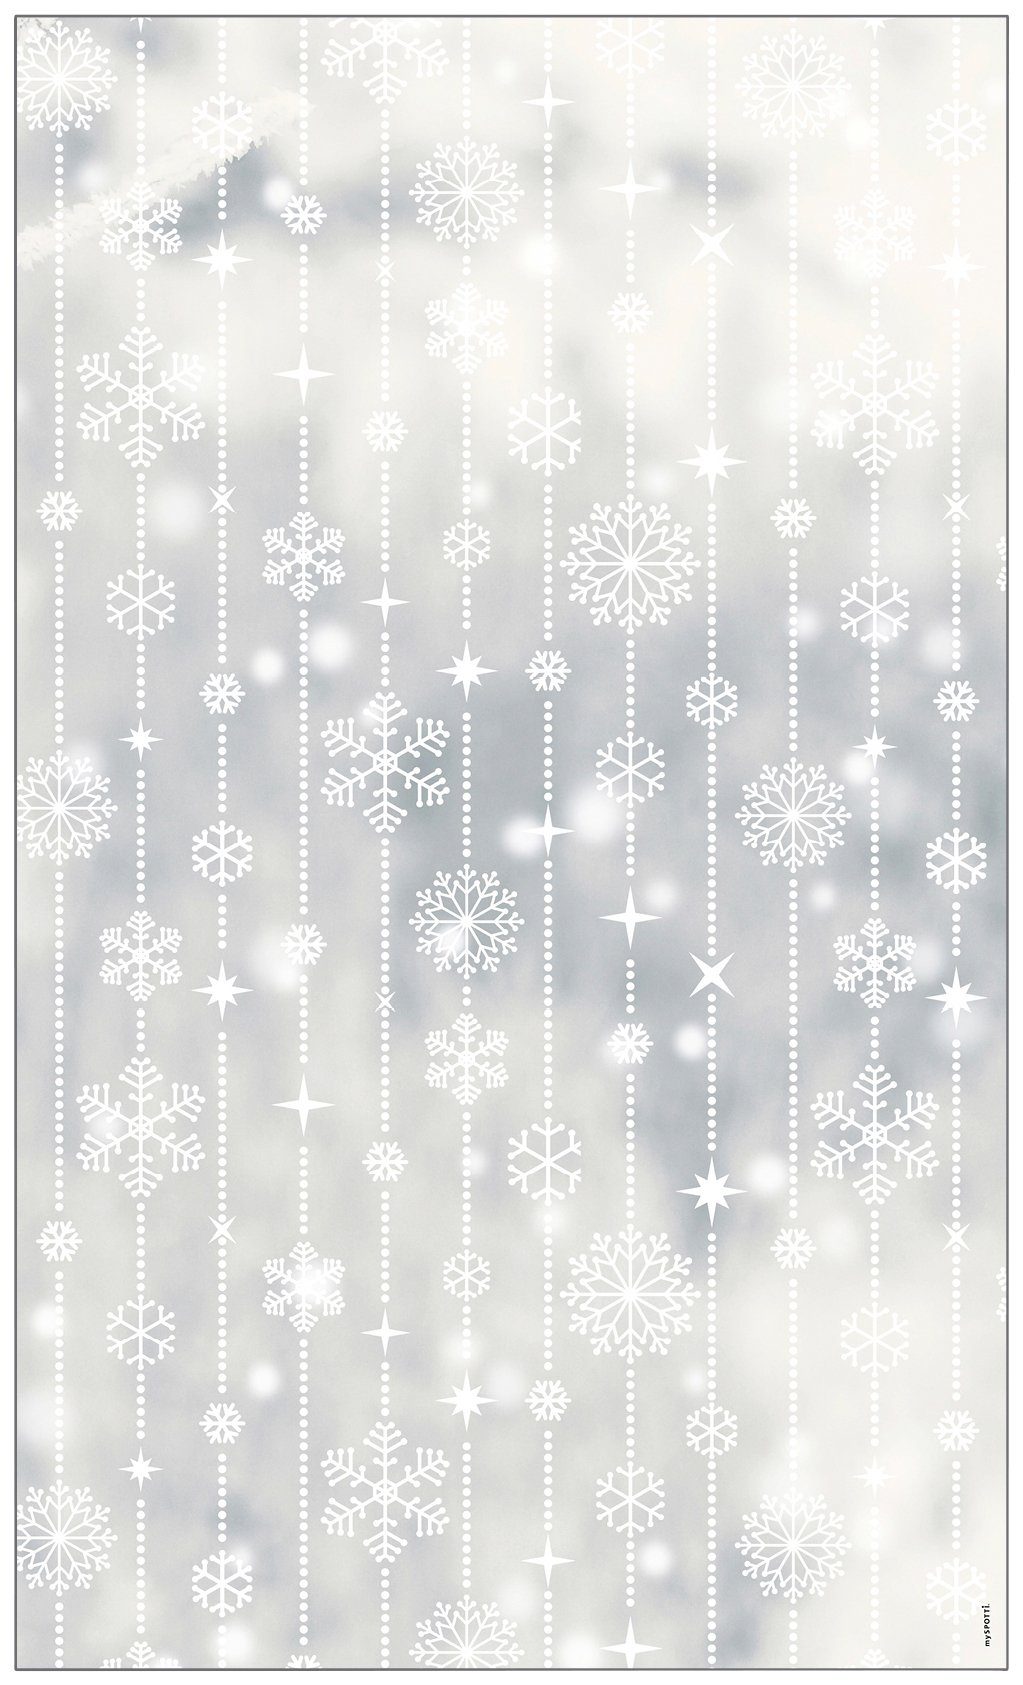 Fensterfolie Look Schneeflocken white, MySpotti, halbtransparent, glatt, 60 x 100 cm, statisch haftend | Fensterfolien